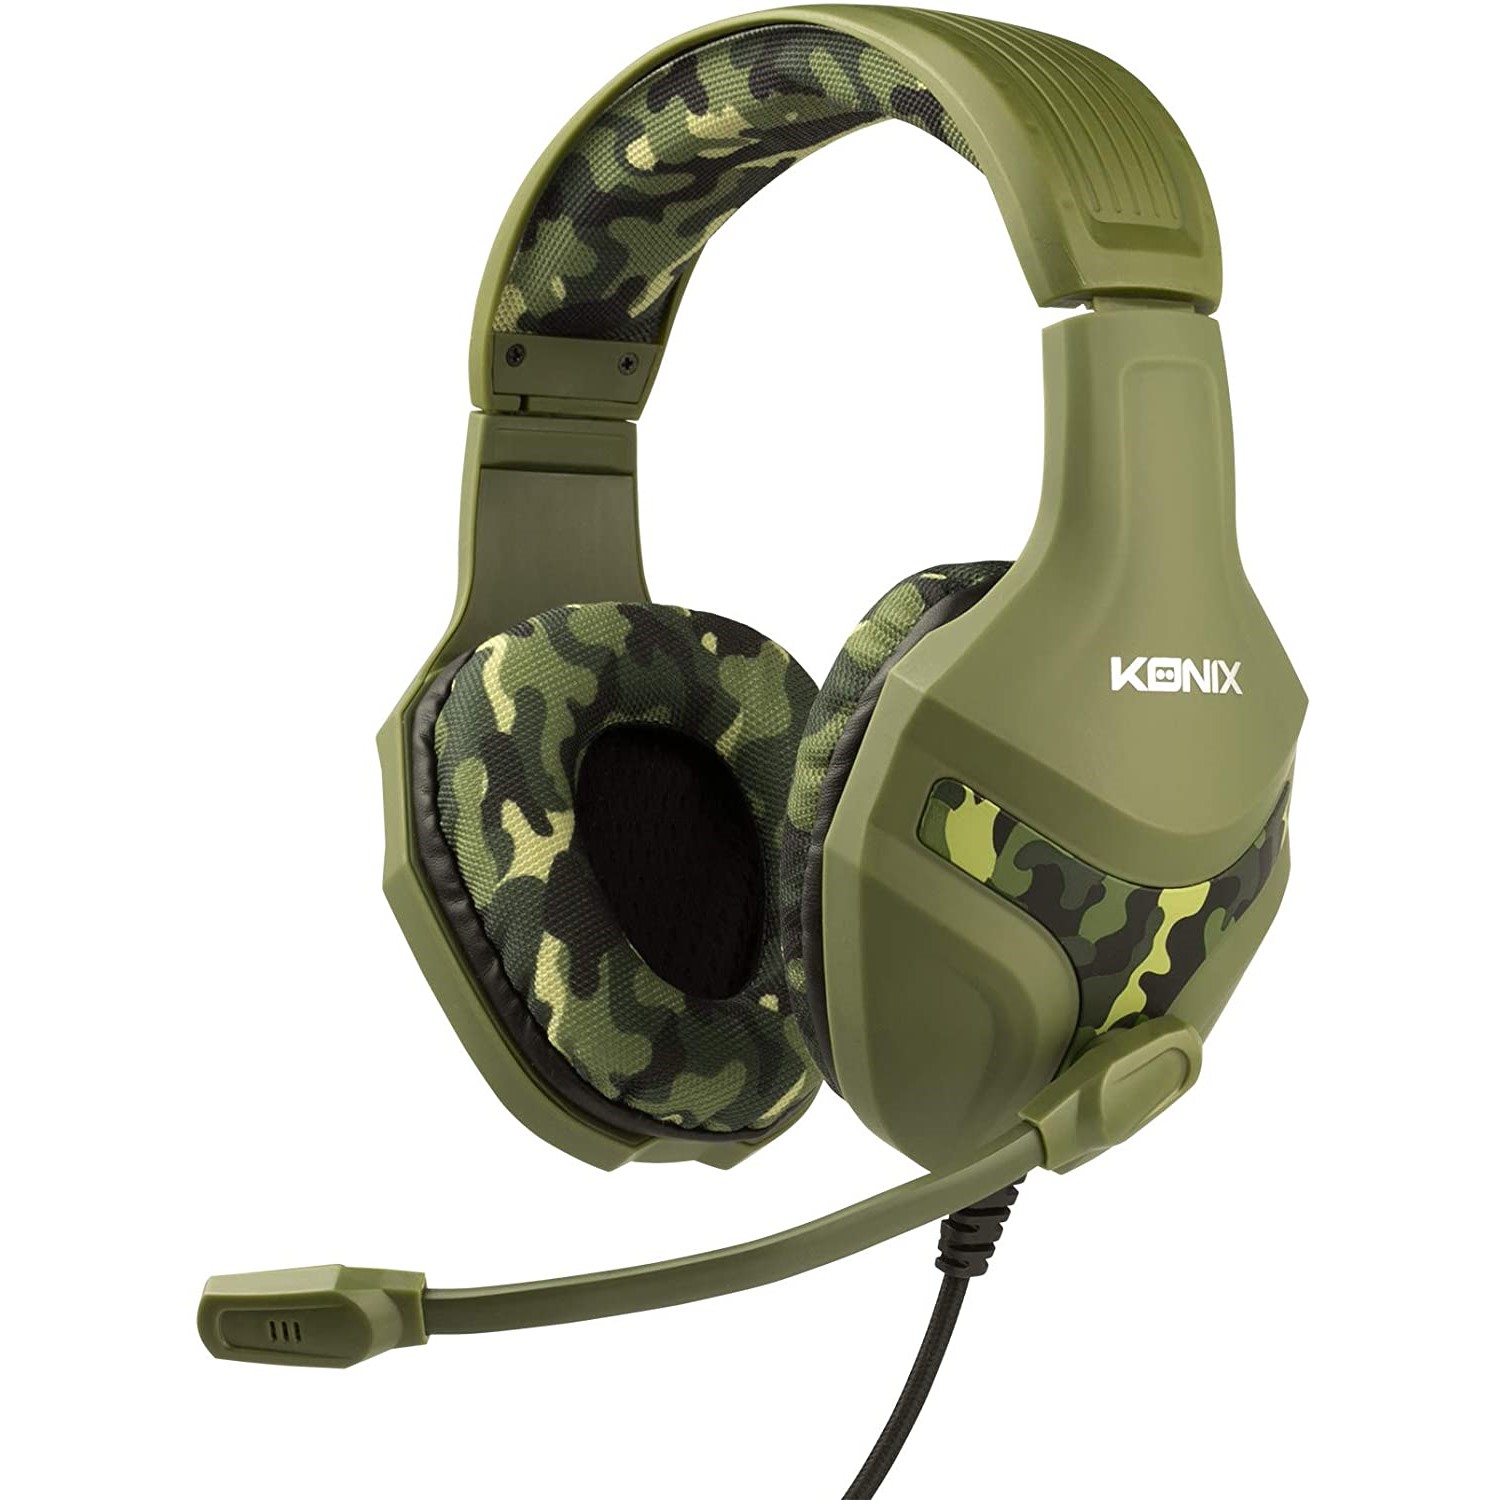 Konix P S 4 gaming headset